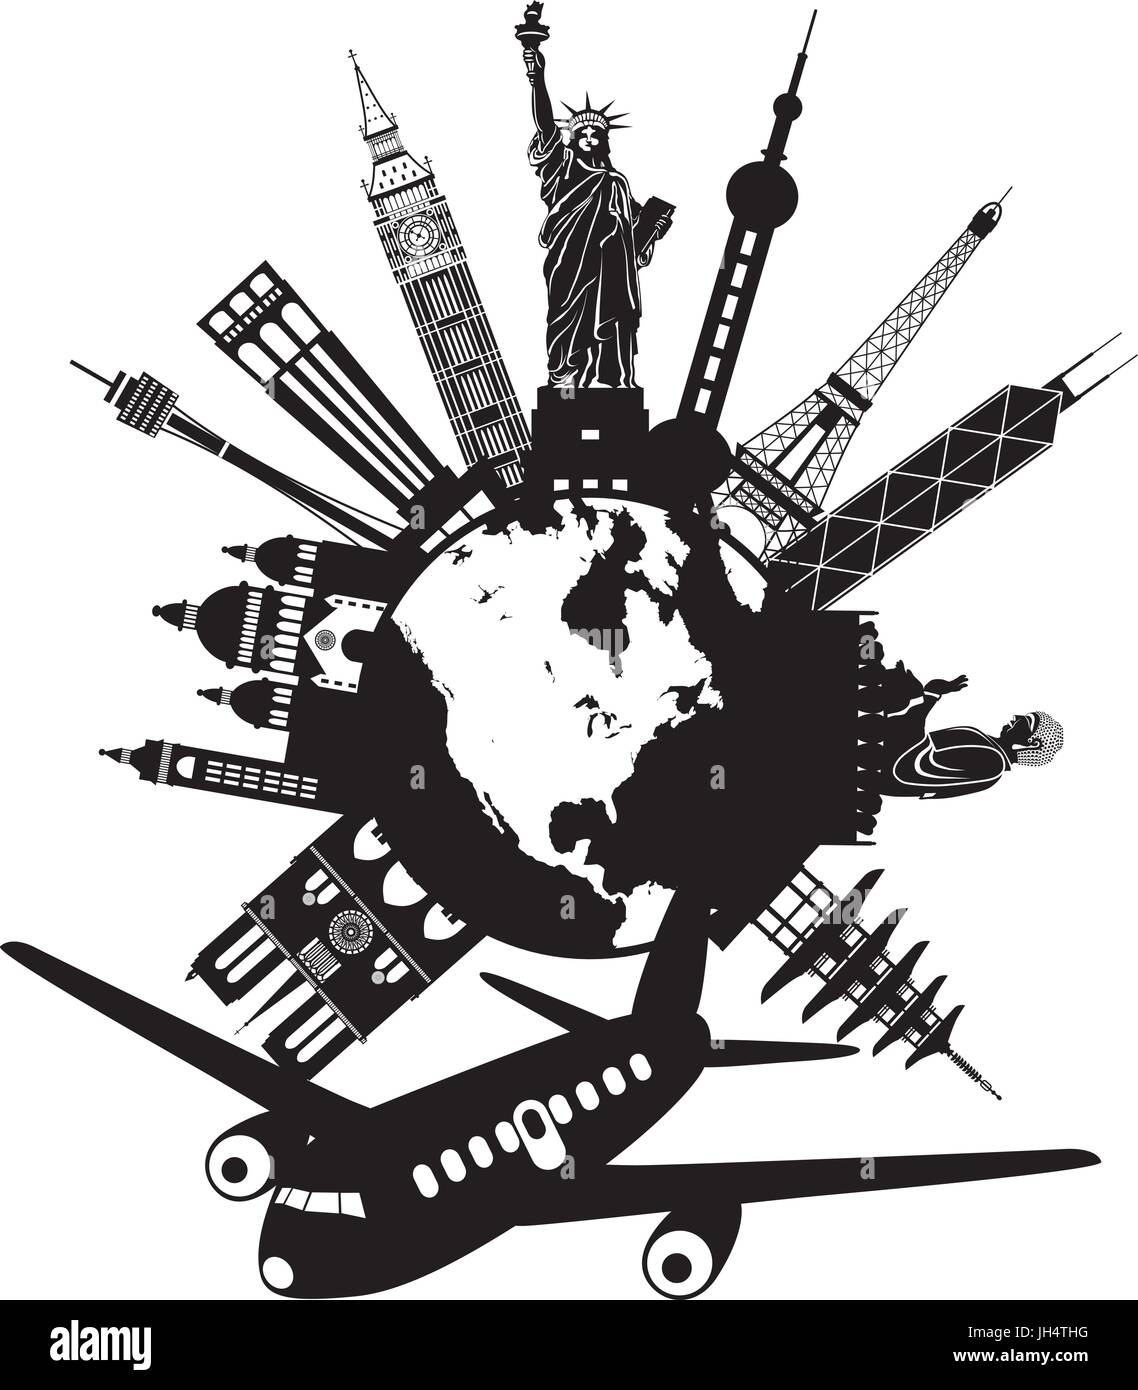 Reise um die Welt mit dem Flugzeug mit Sehenswürdigkeiten auf schwarzen und weißen runden Globus illustration Stock Vektor